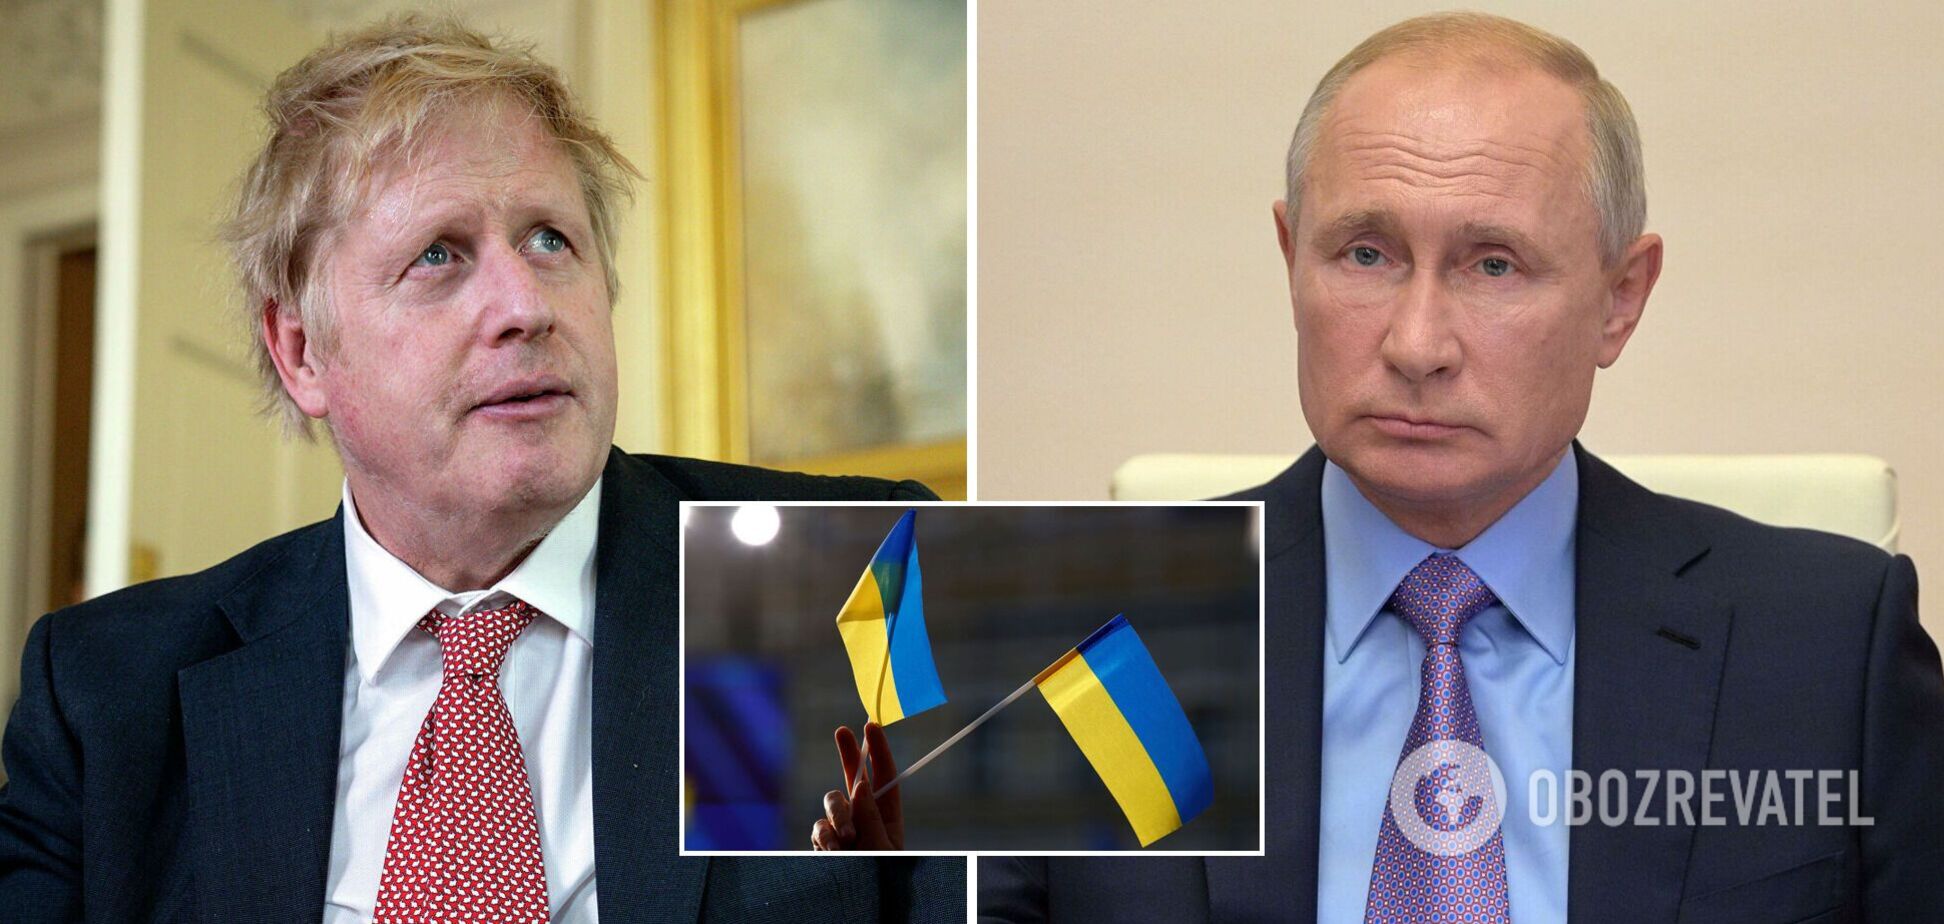 Джонсон посетит Украину, а после проведет 'кризисные' переговоры с Путиным. Новые подробности